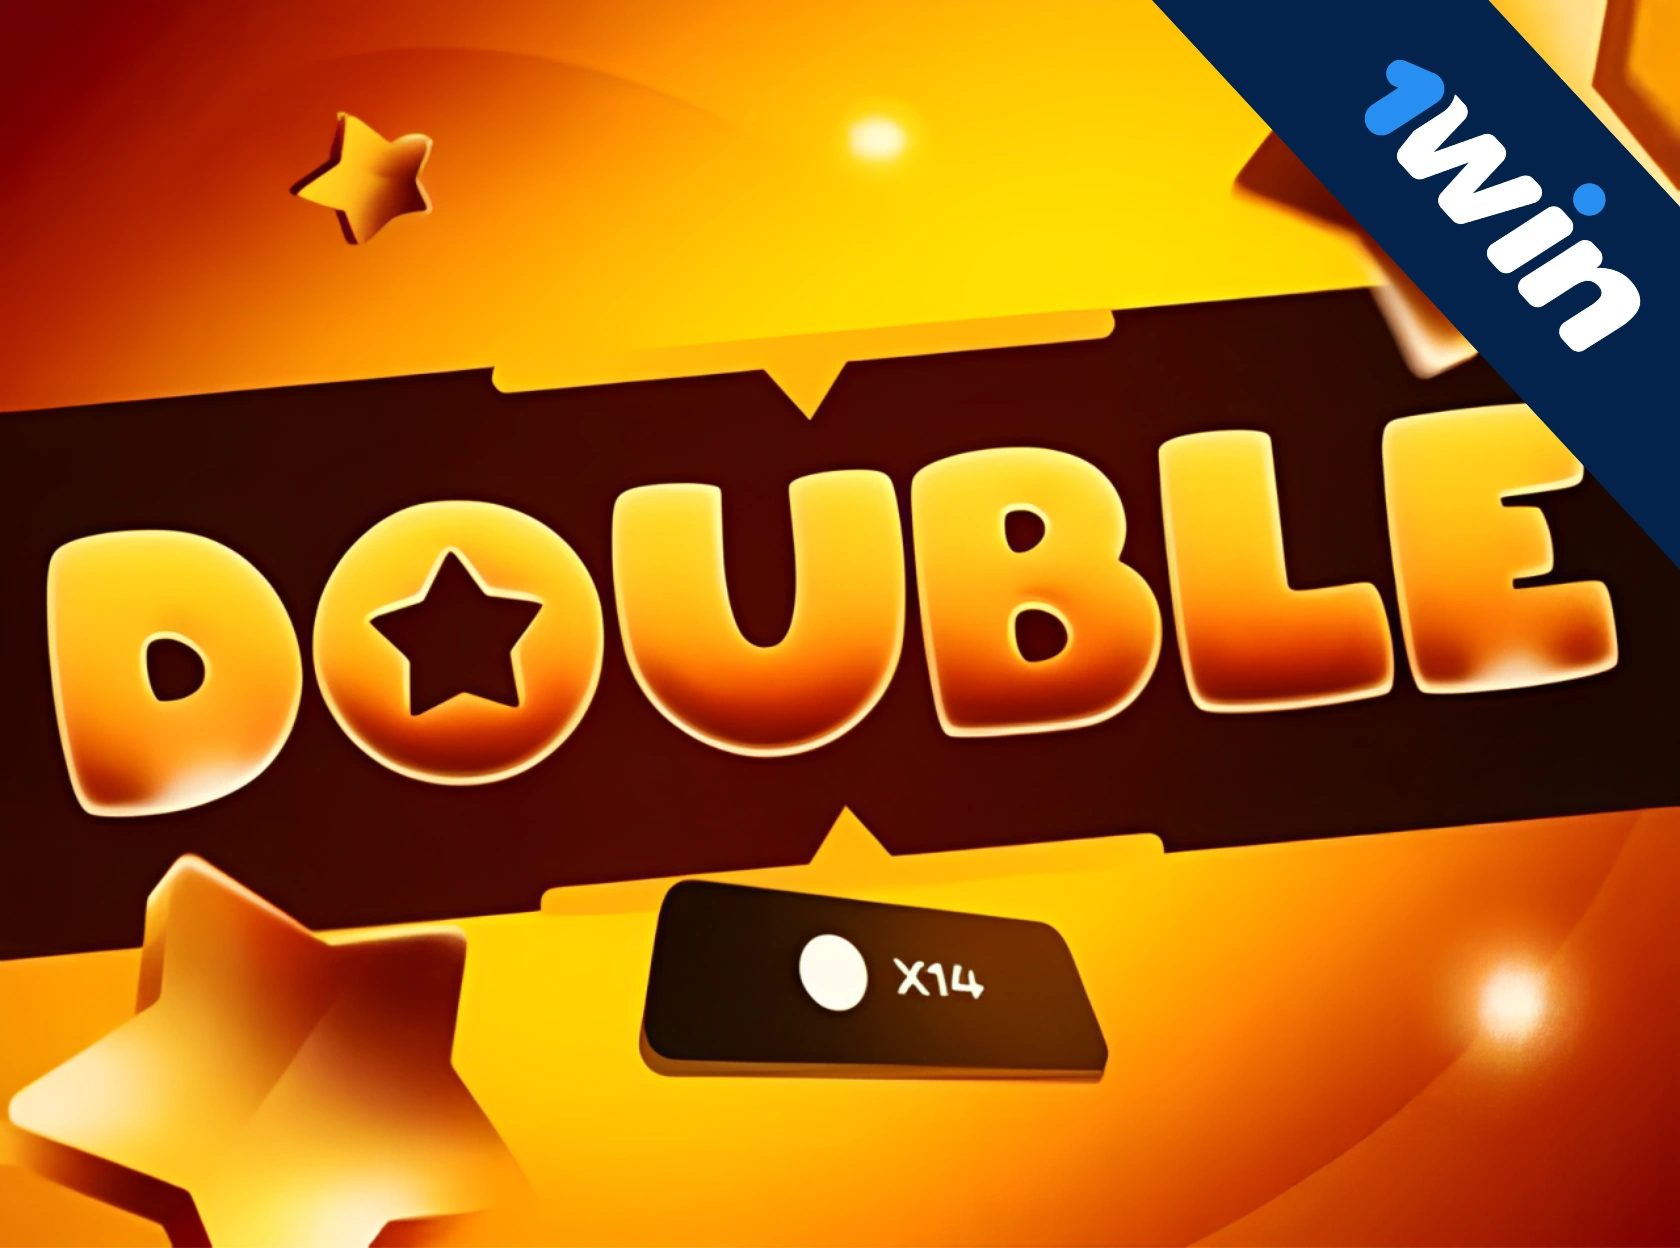 Double 1win - нова ексклюзивна гра!